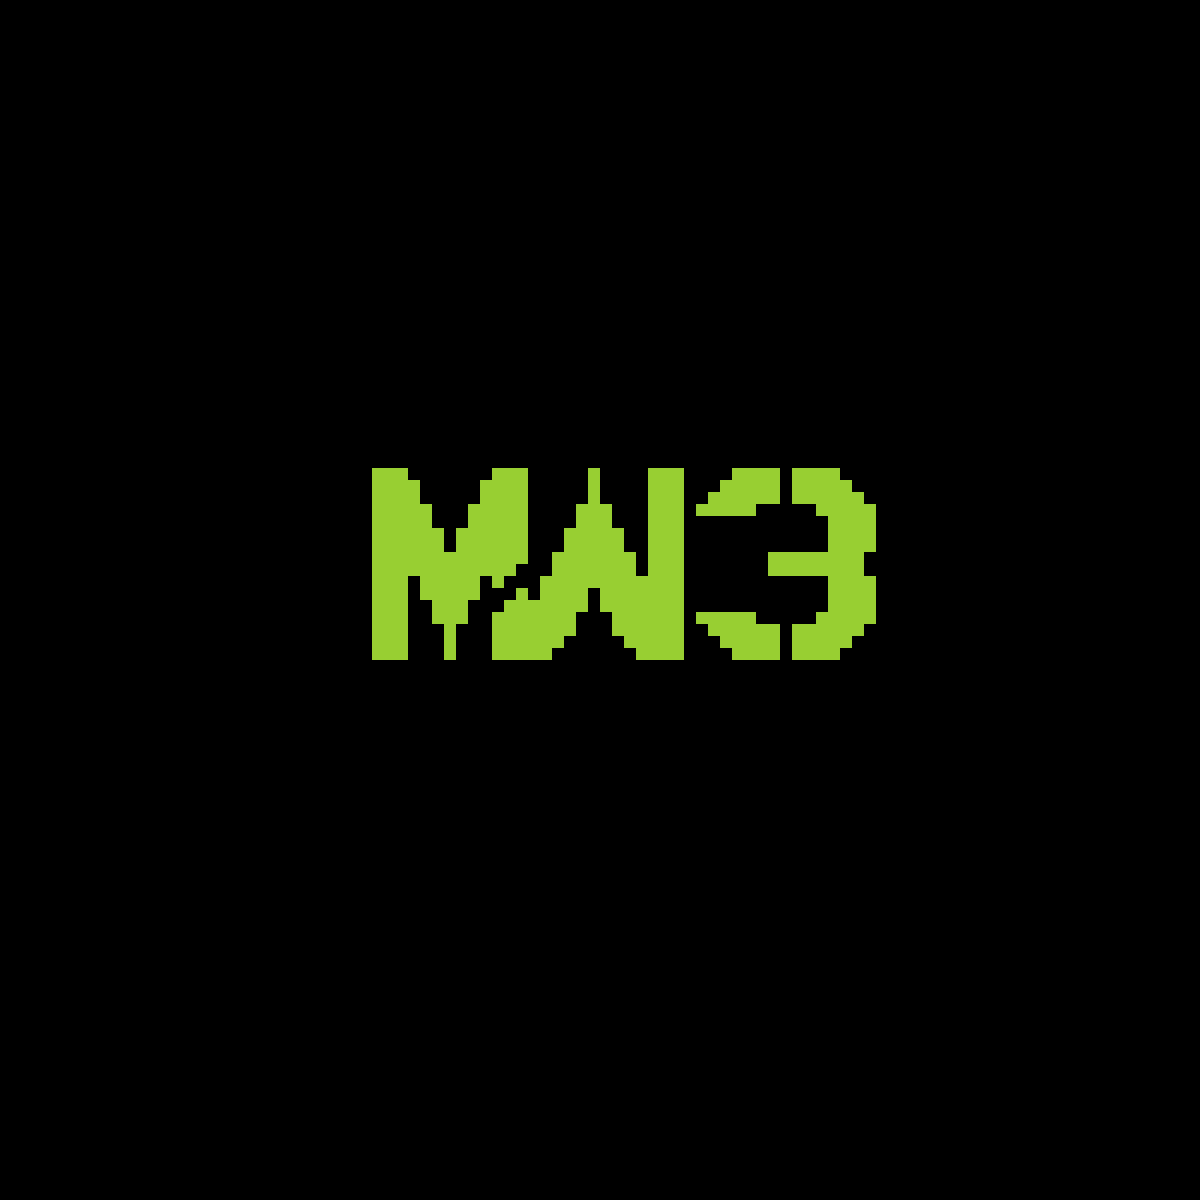 MW3 Logo